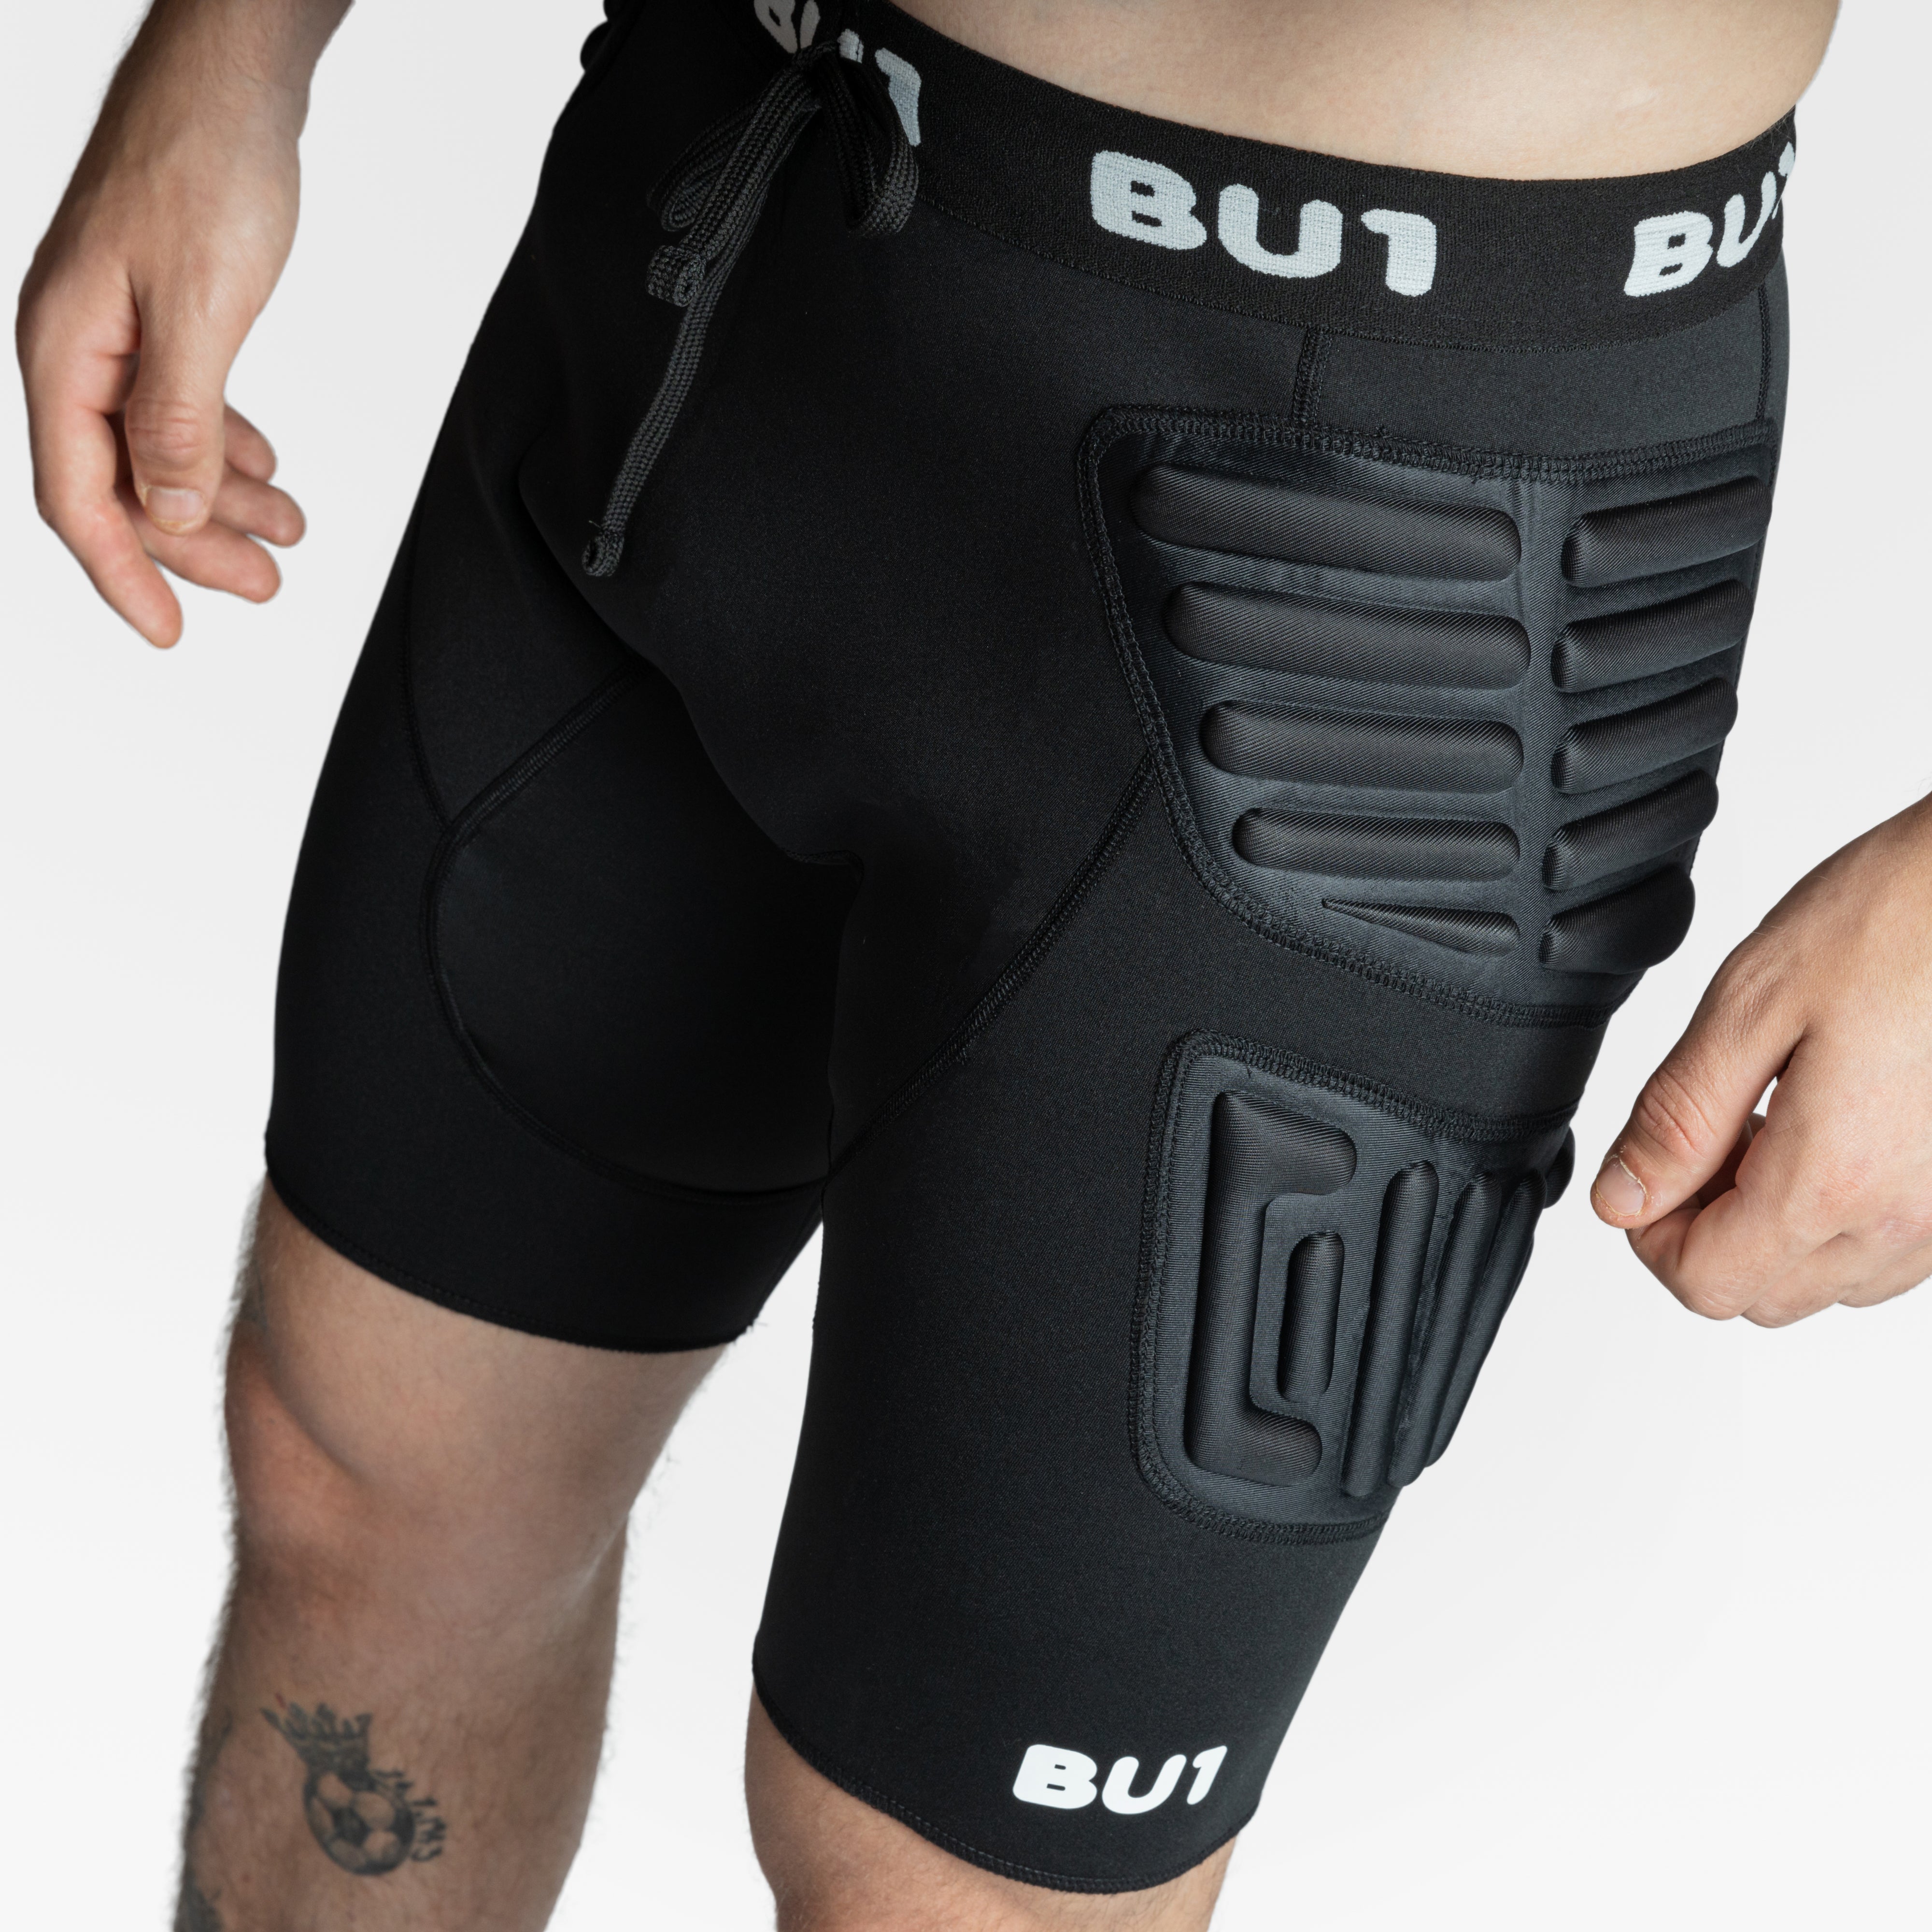 BU1 reinforced neoprene leggings short